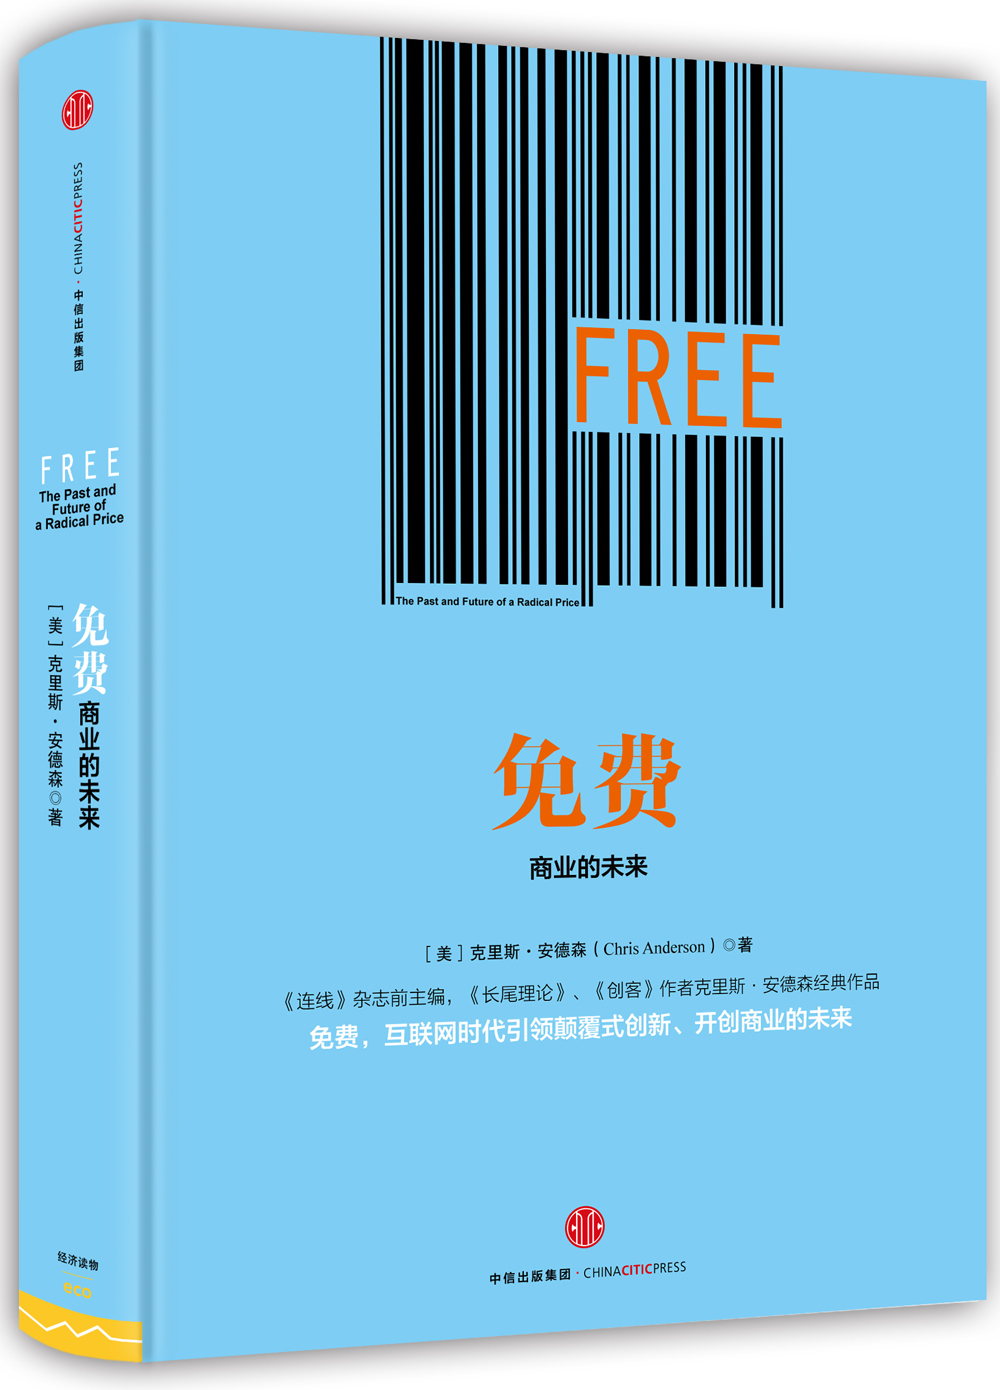 免费 商业的未来 《长尾理论》《创客》作者克里斯•安德森经典作品 中信出版社图书